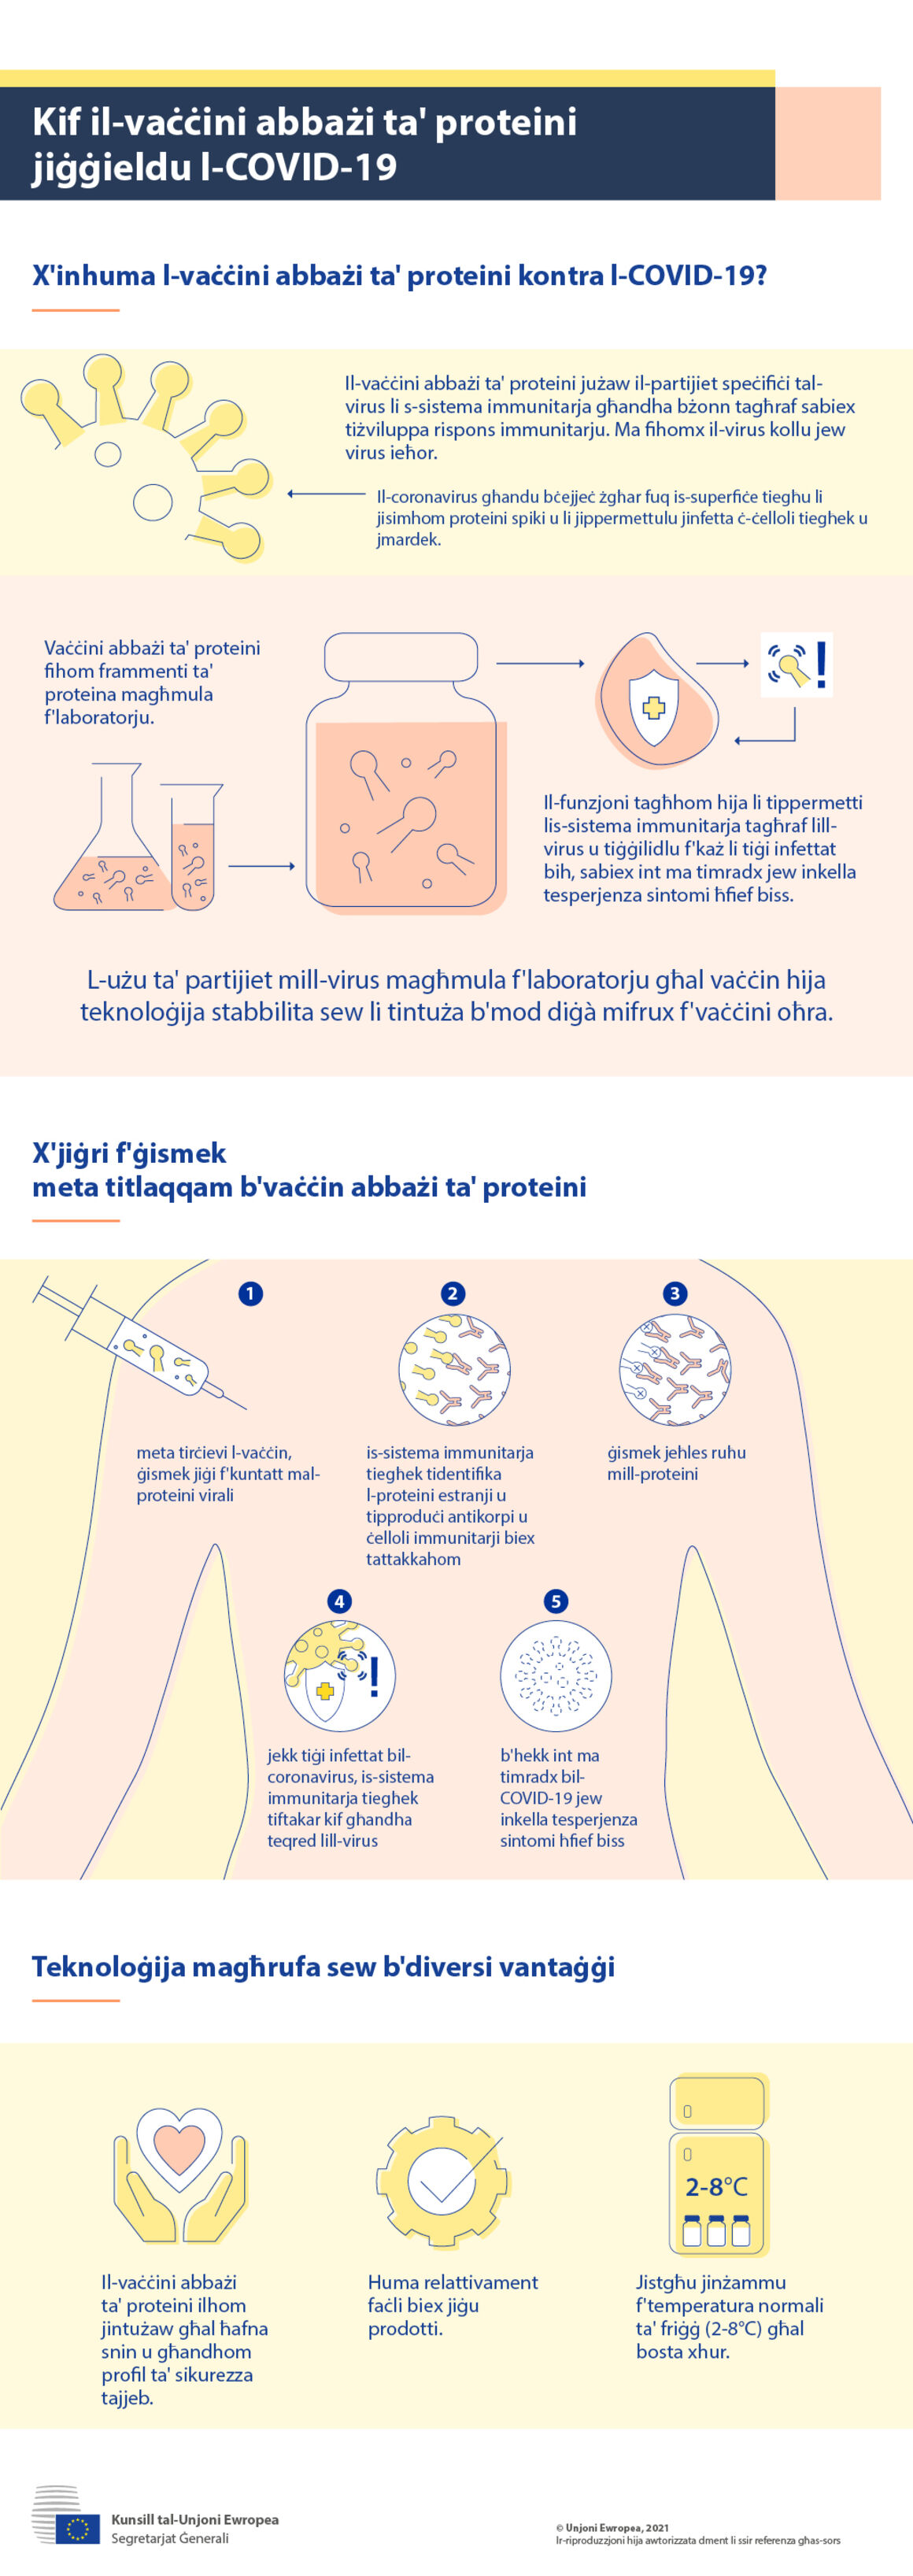 Infografika - Kif il-vaċċini abbażi ta' proteini jaħdmu kontra l-COVID-19